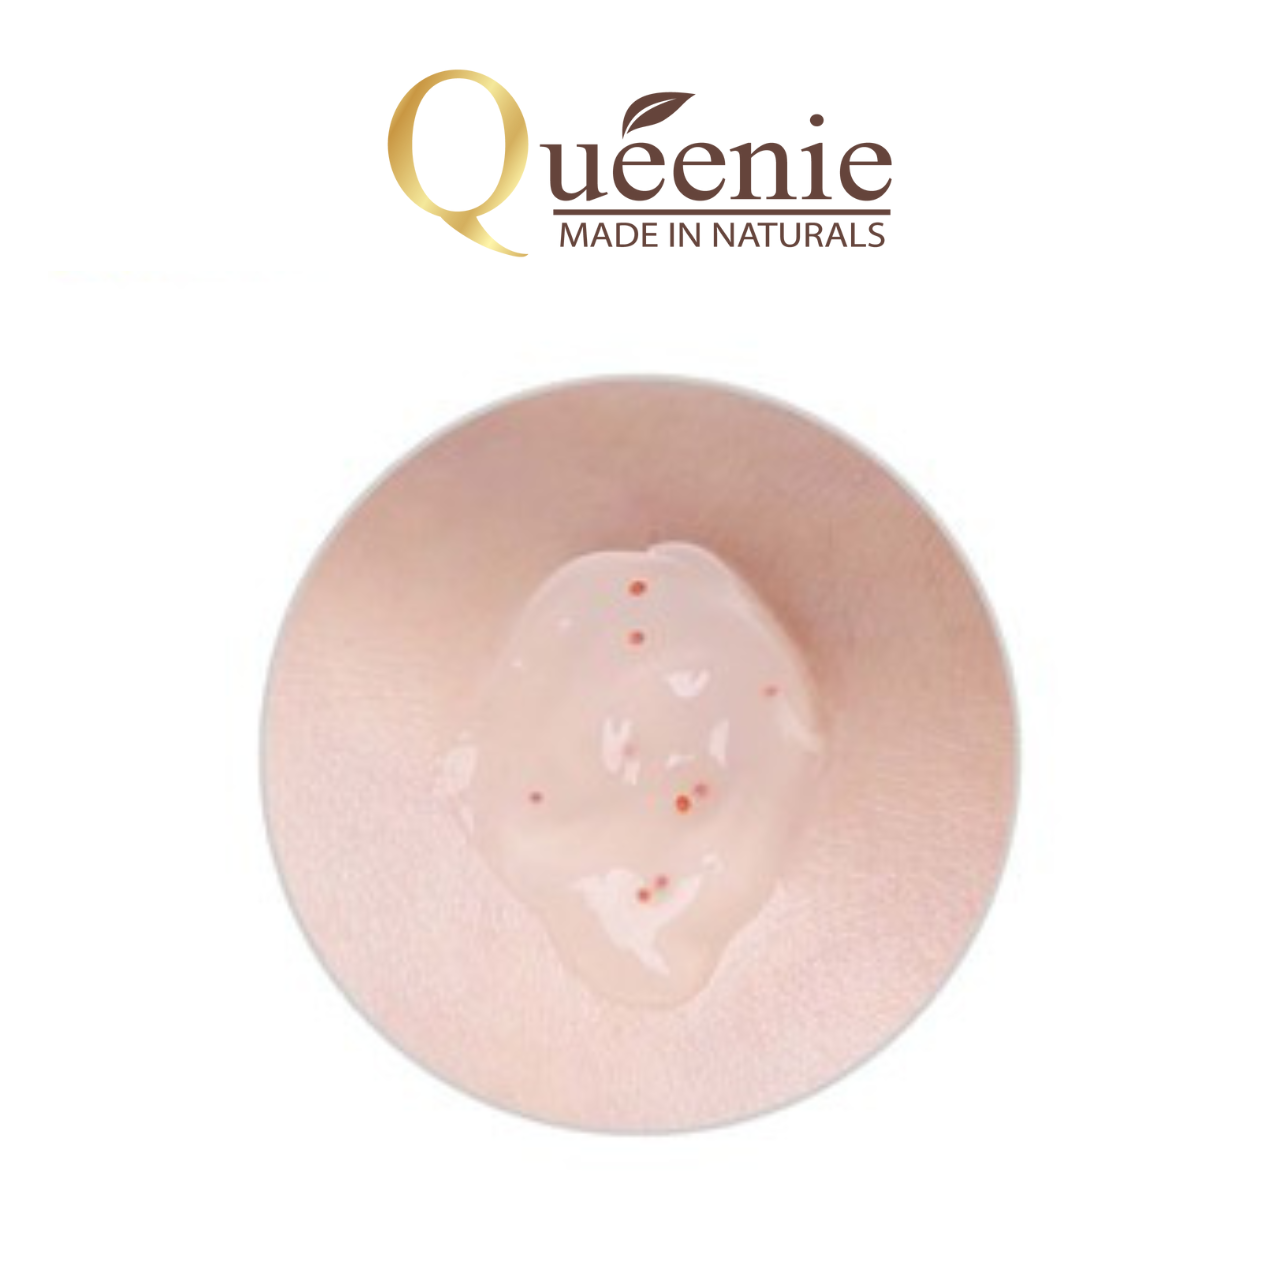 Gel Tẩy Tế Bào Chết trải nghiệm Queenie AC Pure làm sạch sâu ngừa mụn phù hợp với mọi loại da Hàn Quốc chính hãng 15ml